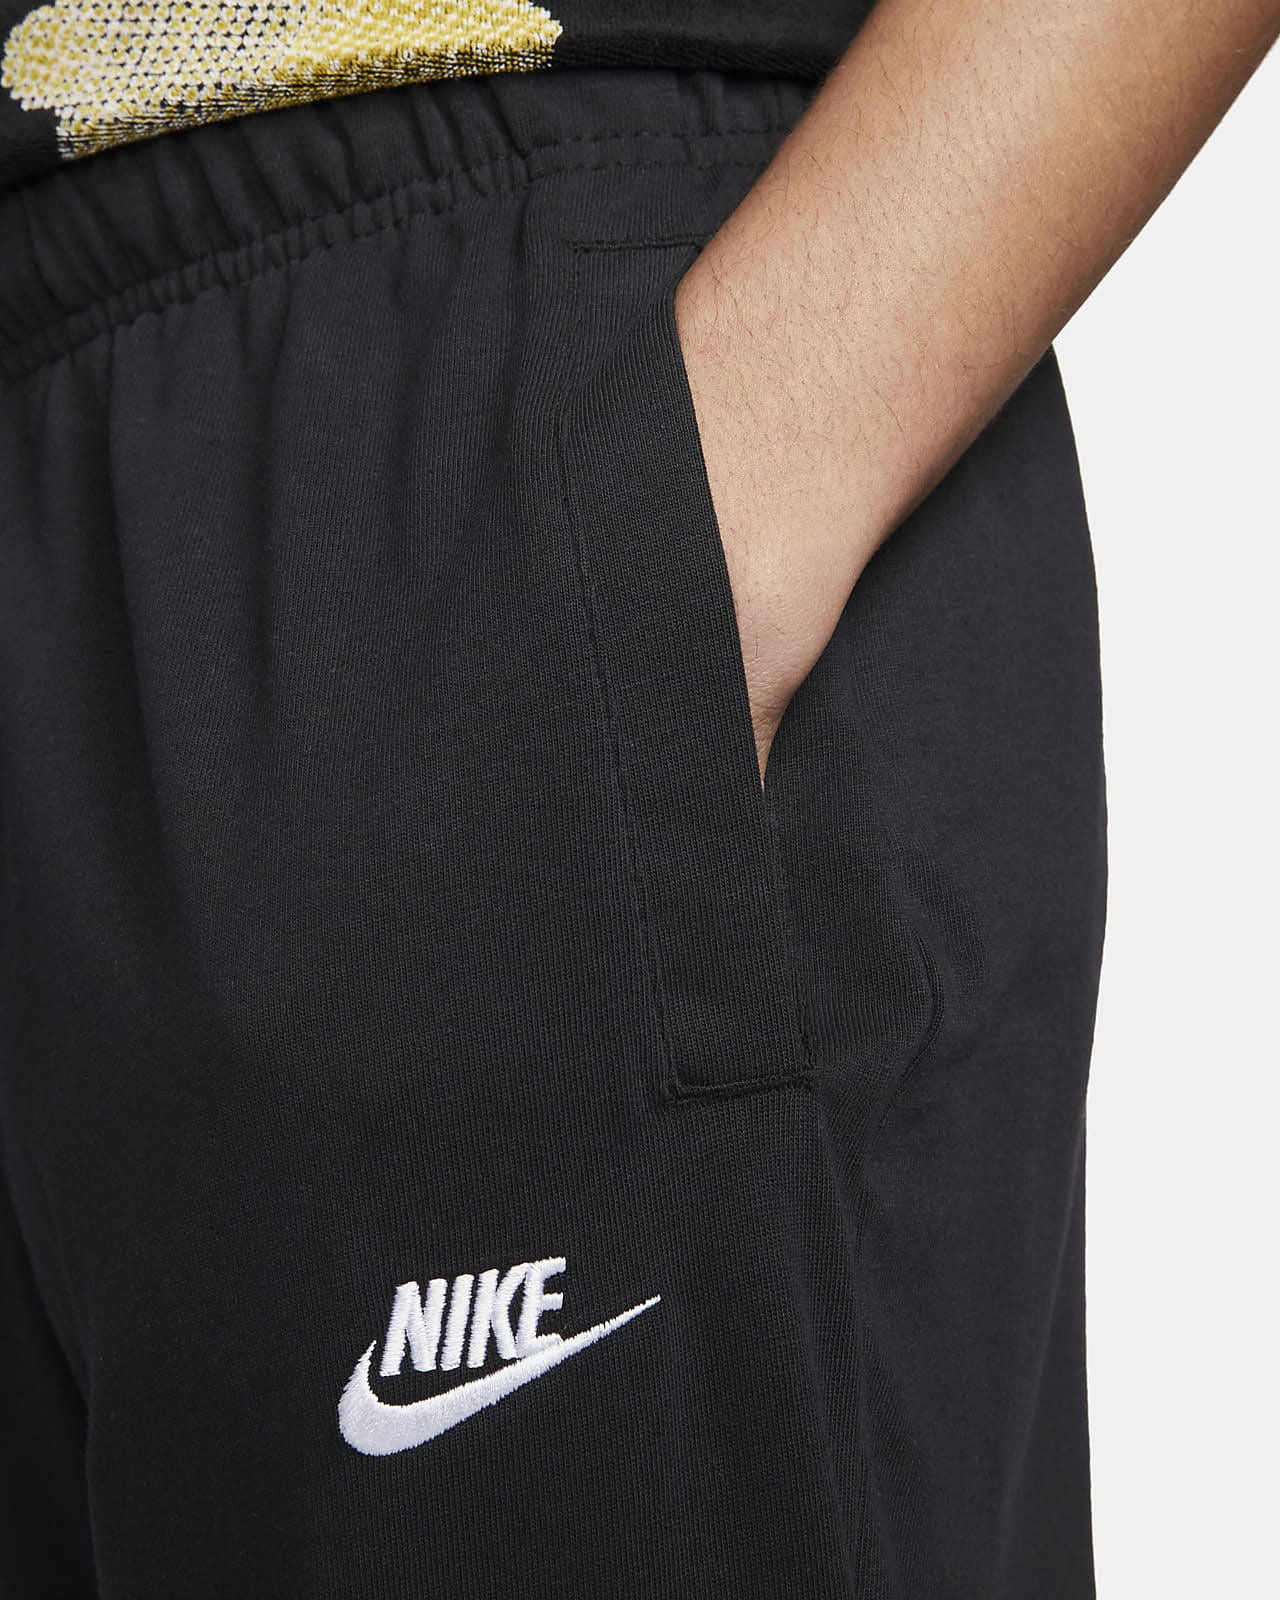 Nike Sportswear Men's Jersey Pants Light Lemon Twist Size Medium DA7162-736